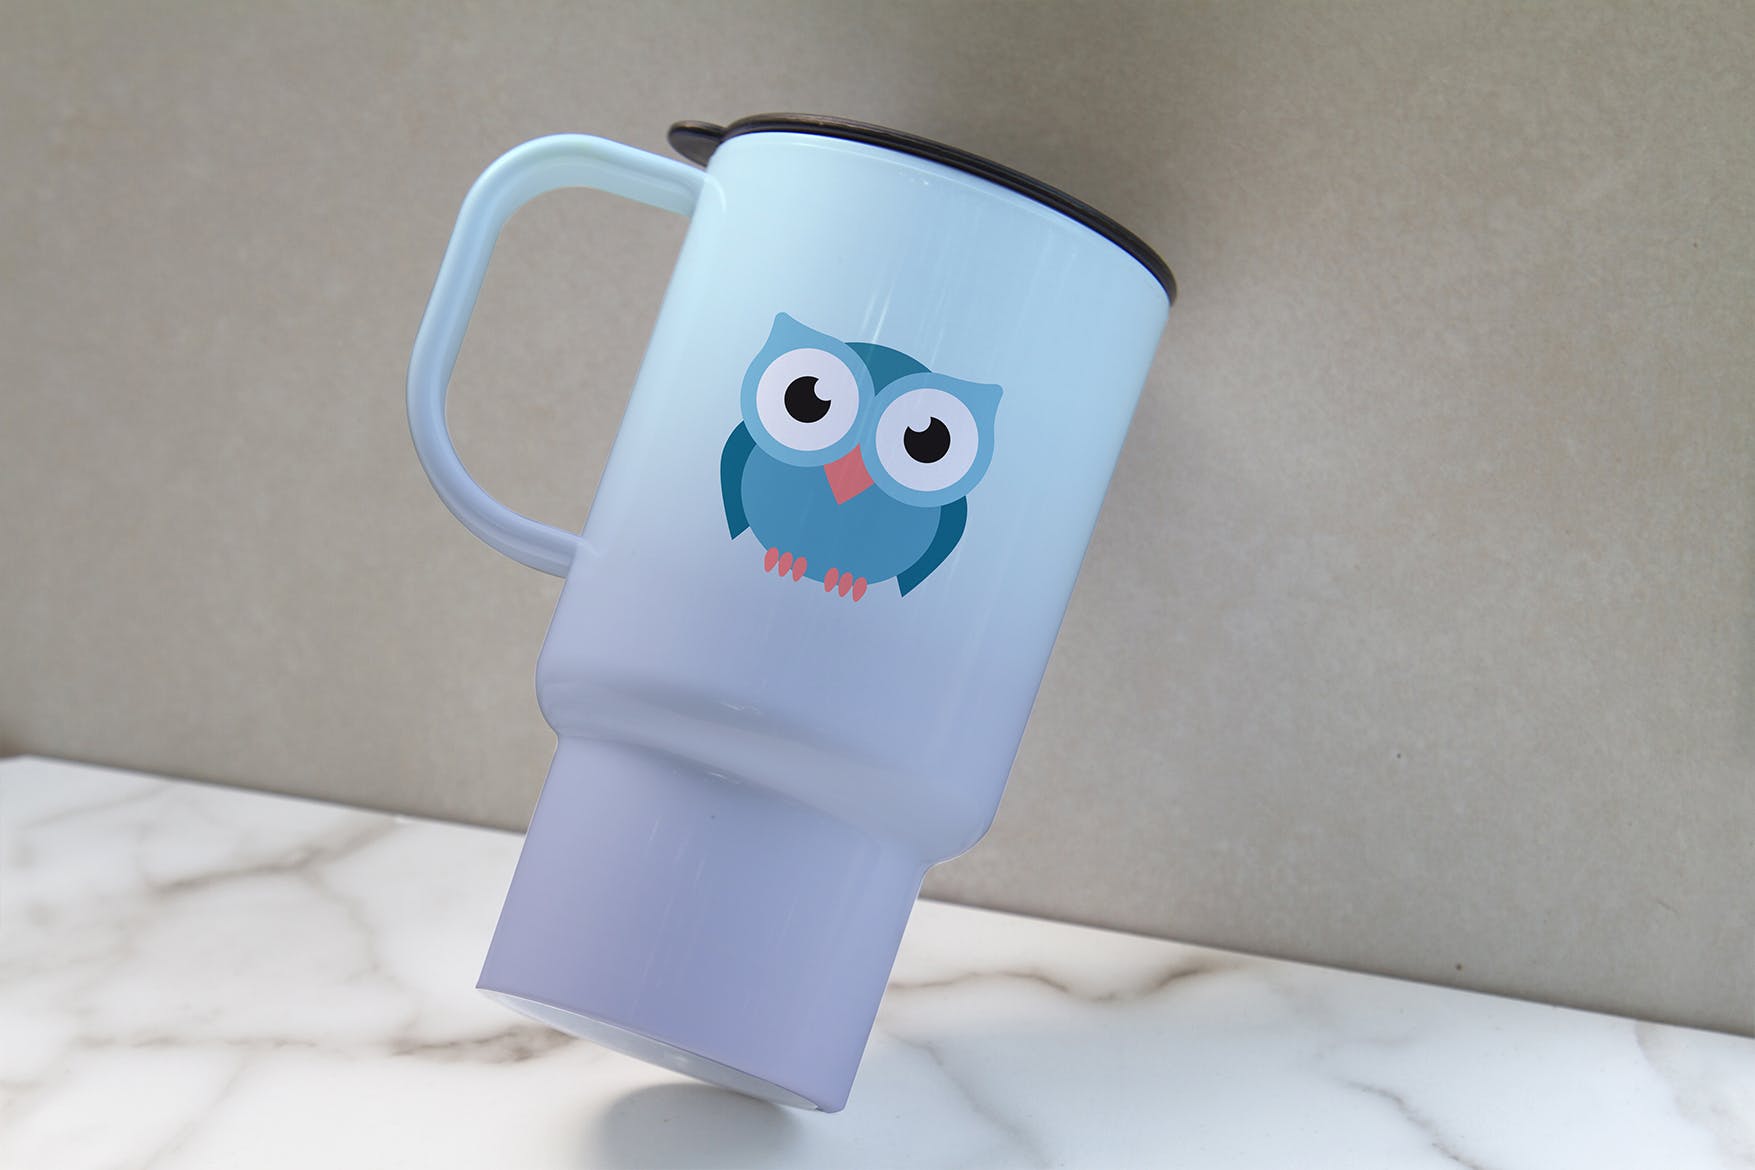 便携式杯子图案设计预览普贤居精选 Portable Cup Mockup插图(2)